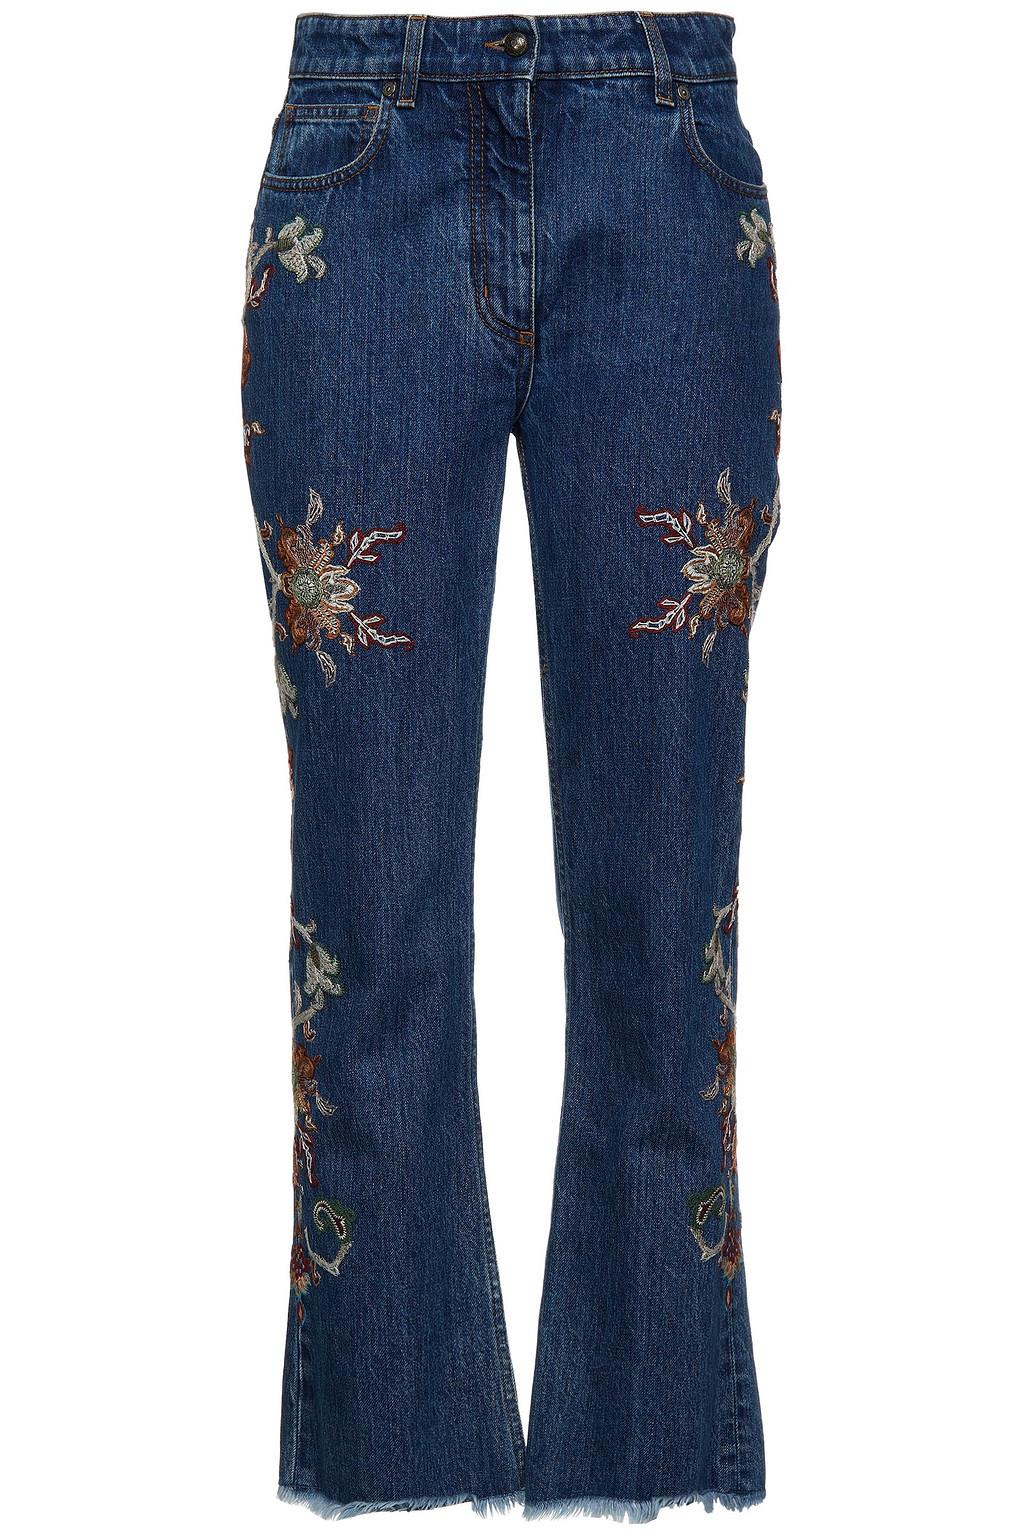 jeans-bordados-etro-the-outnet